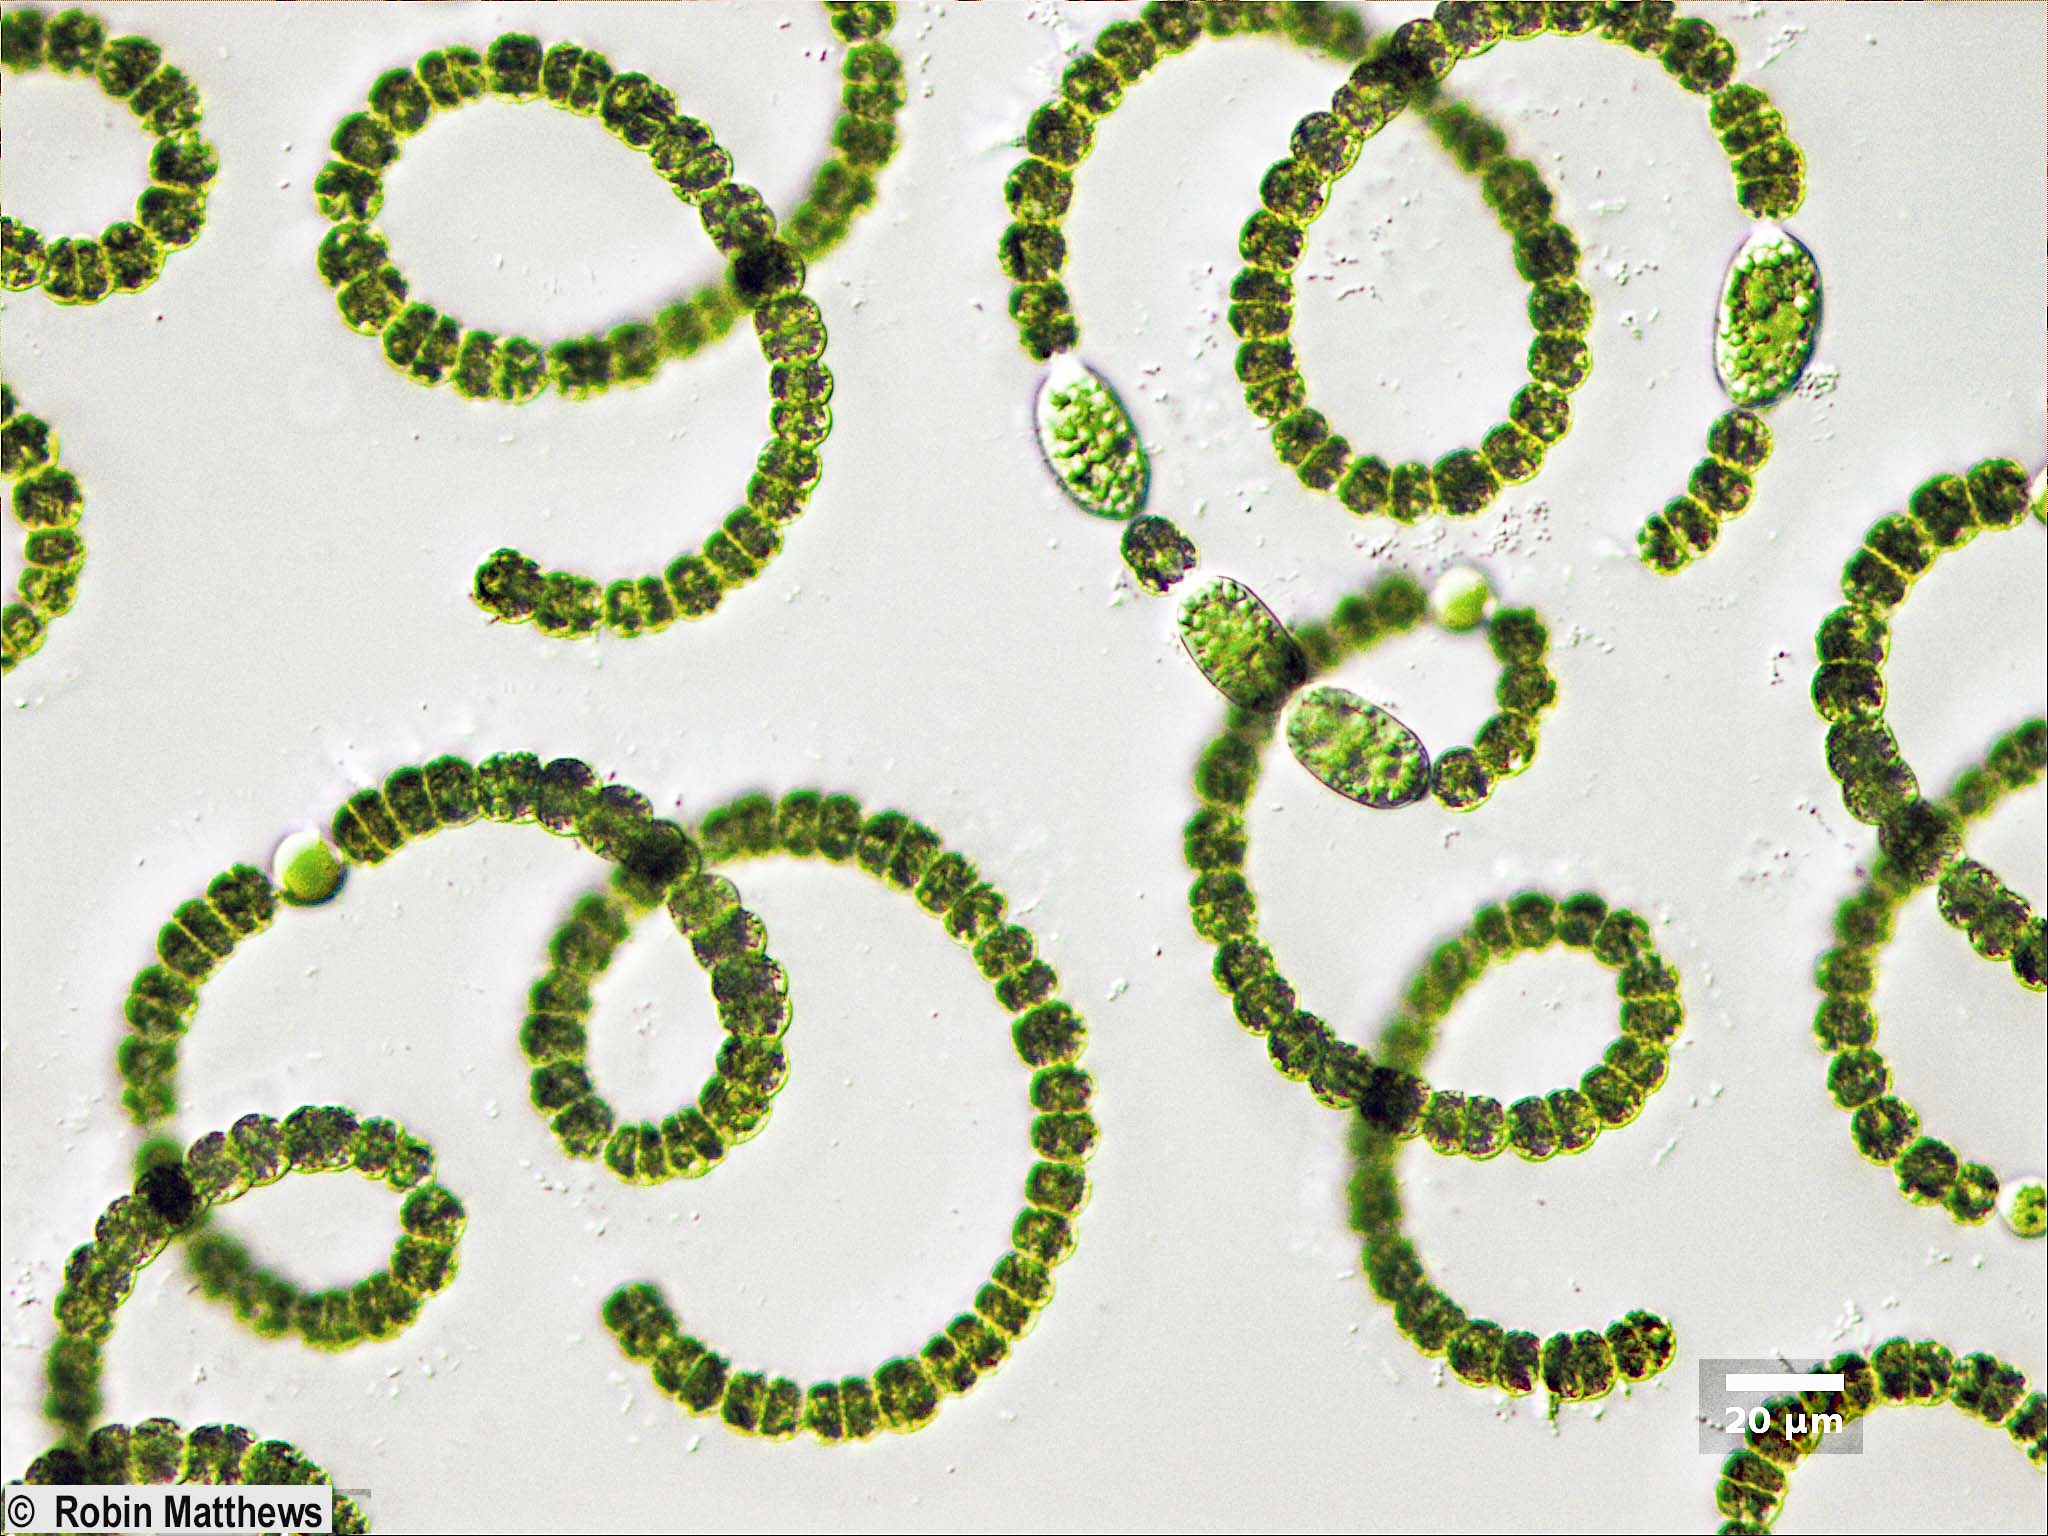 Cyanobacteria/Nostocales/Aphanizomenonaceae/Dolichospermum/crassum/dolichospermum-560.jpg